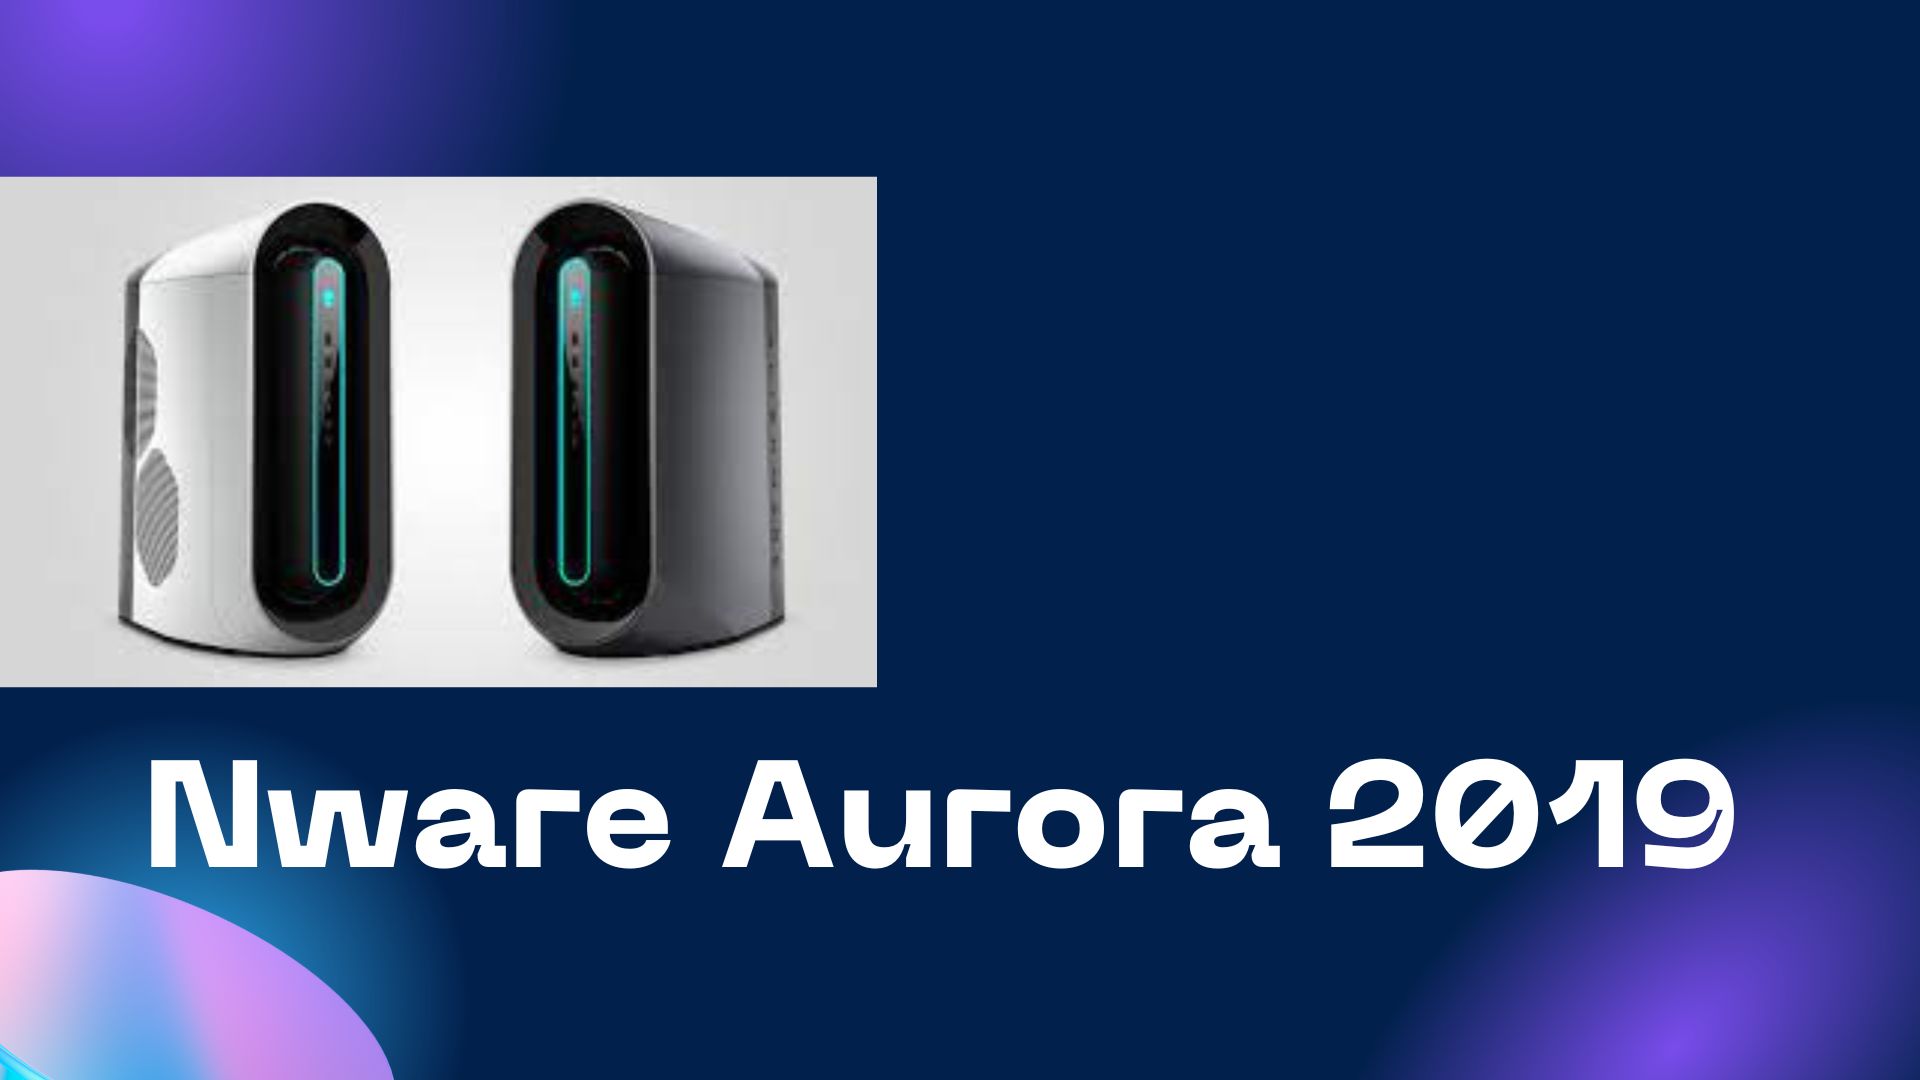 nware aurora 2019